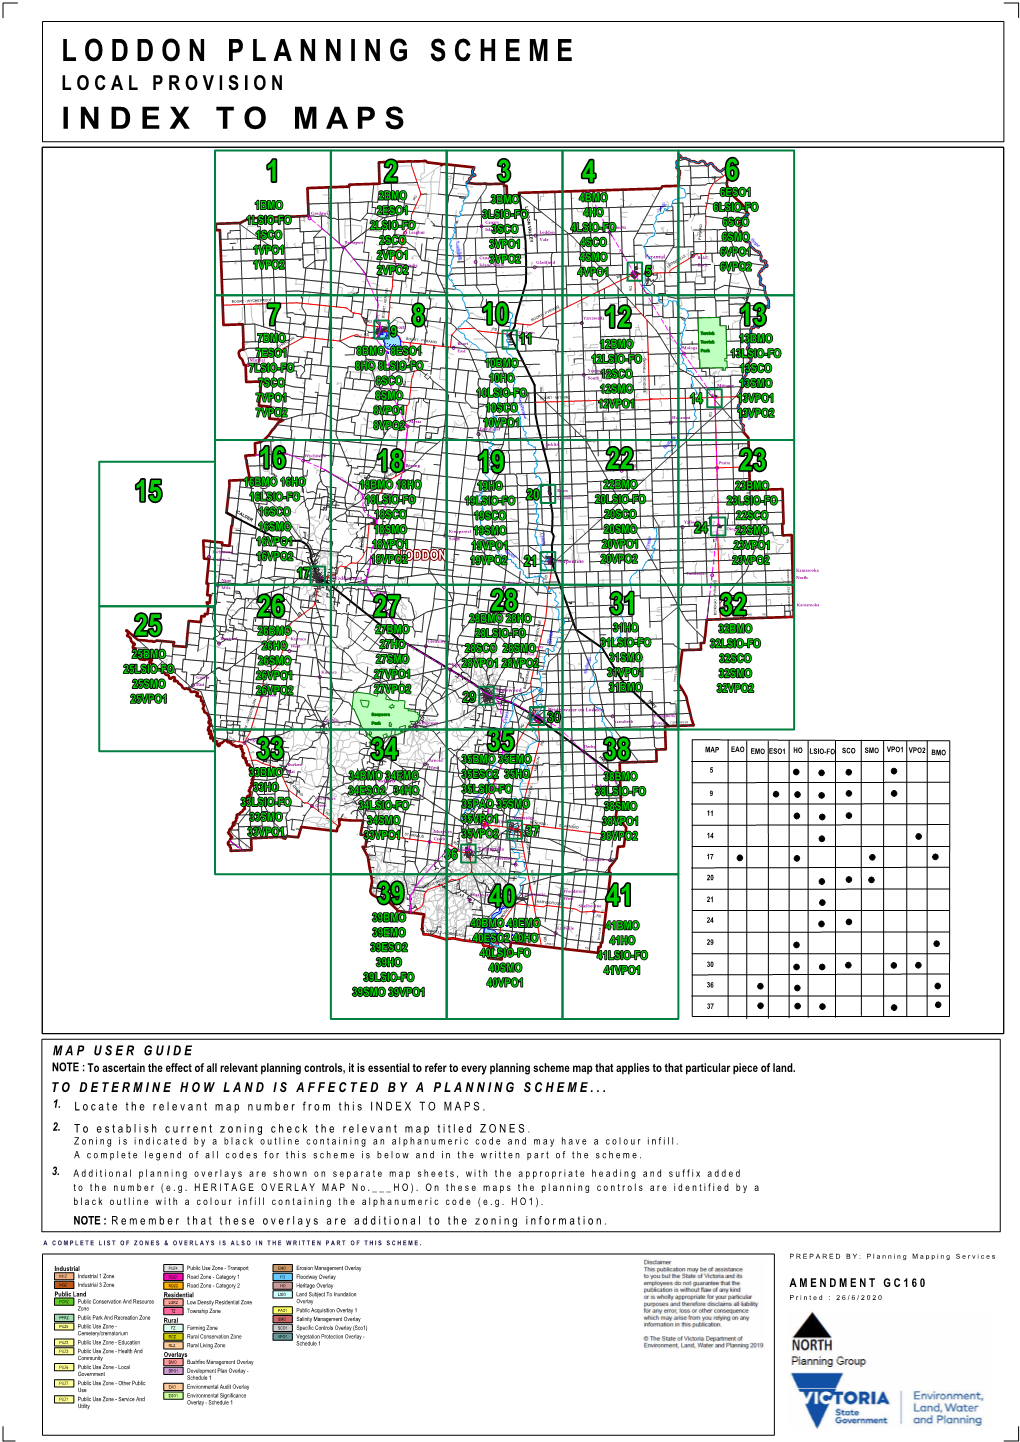 Loddonplanningscheme